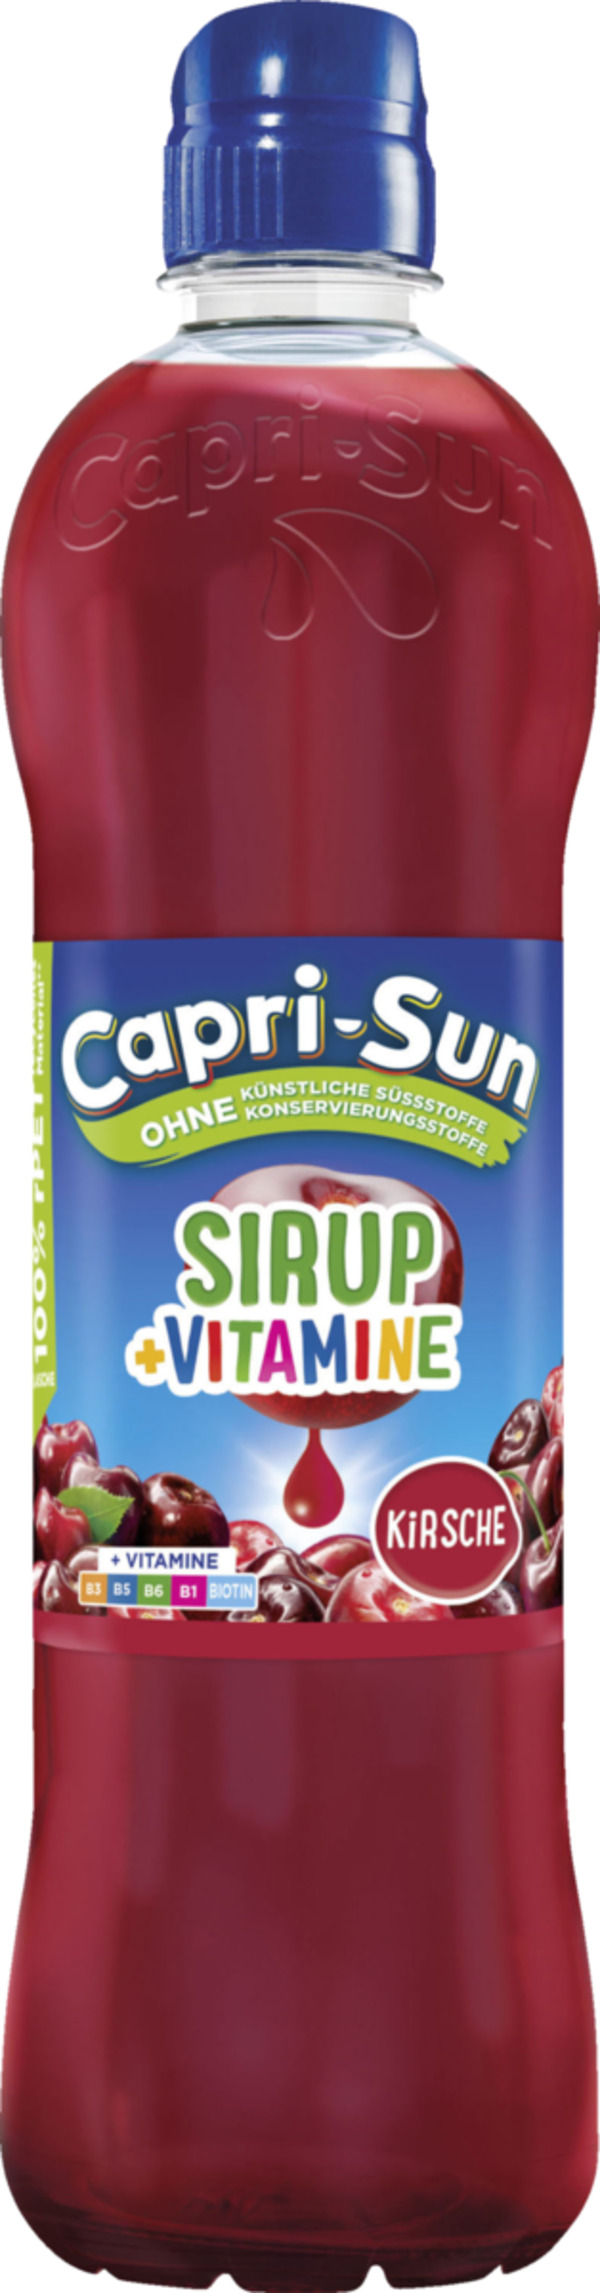 Bild 1 von Capri-Sun Sirup + Vitamine Kirsche